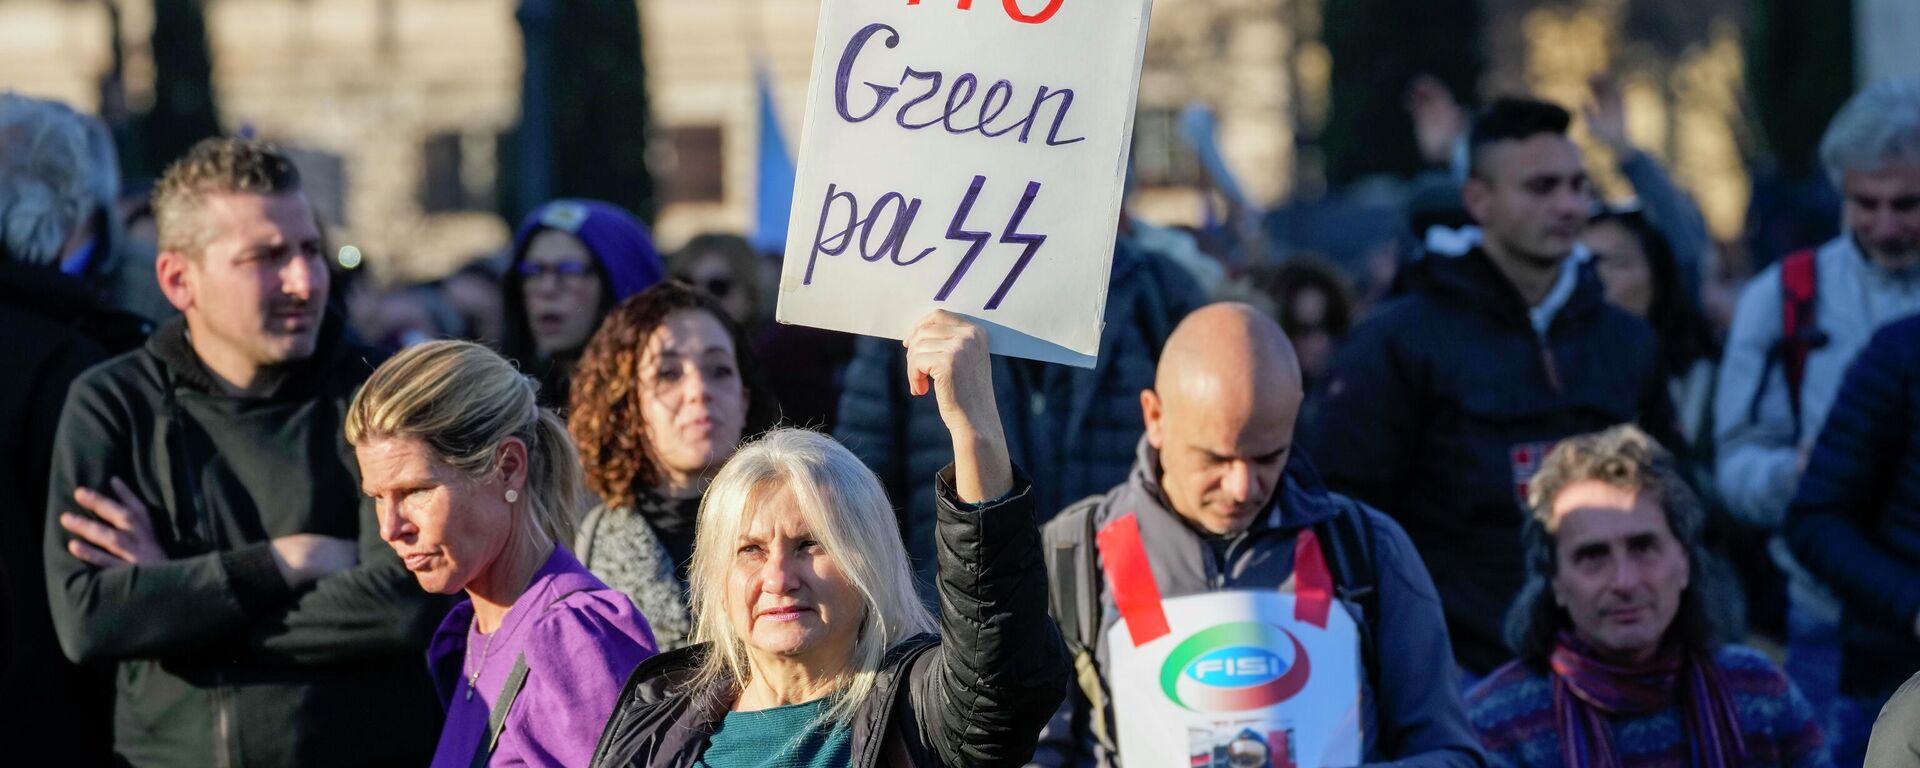 La gente protesta contra el Green Pass de la vacuna COVID-19, en Roma, Italia - Sputnik Mundo, 1920, 18.01.2022